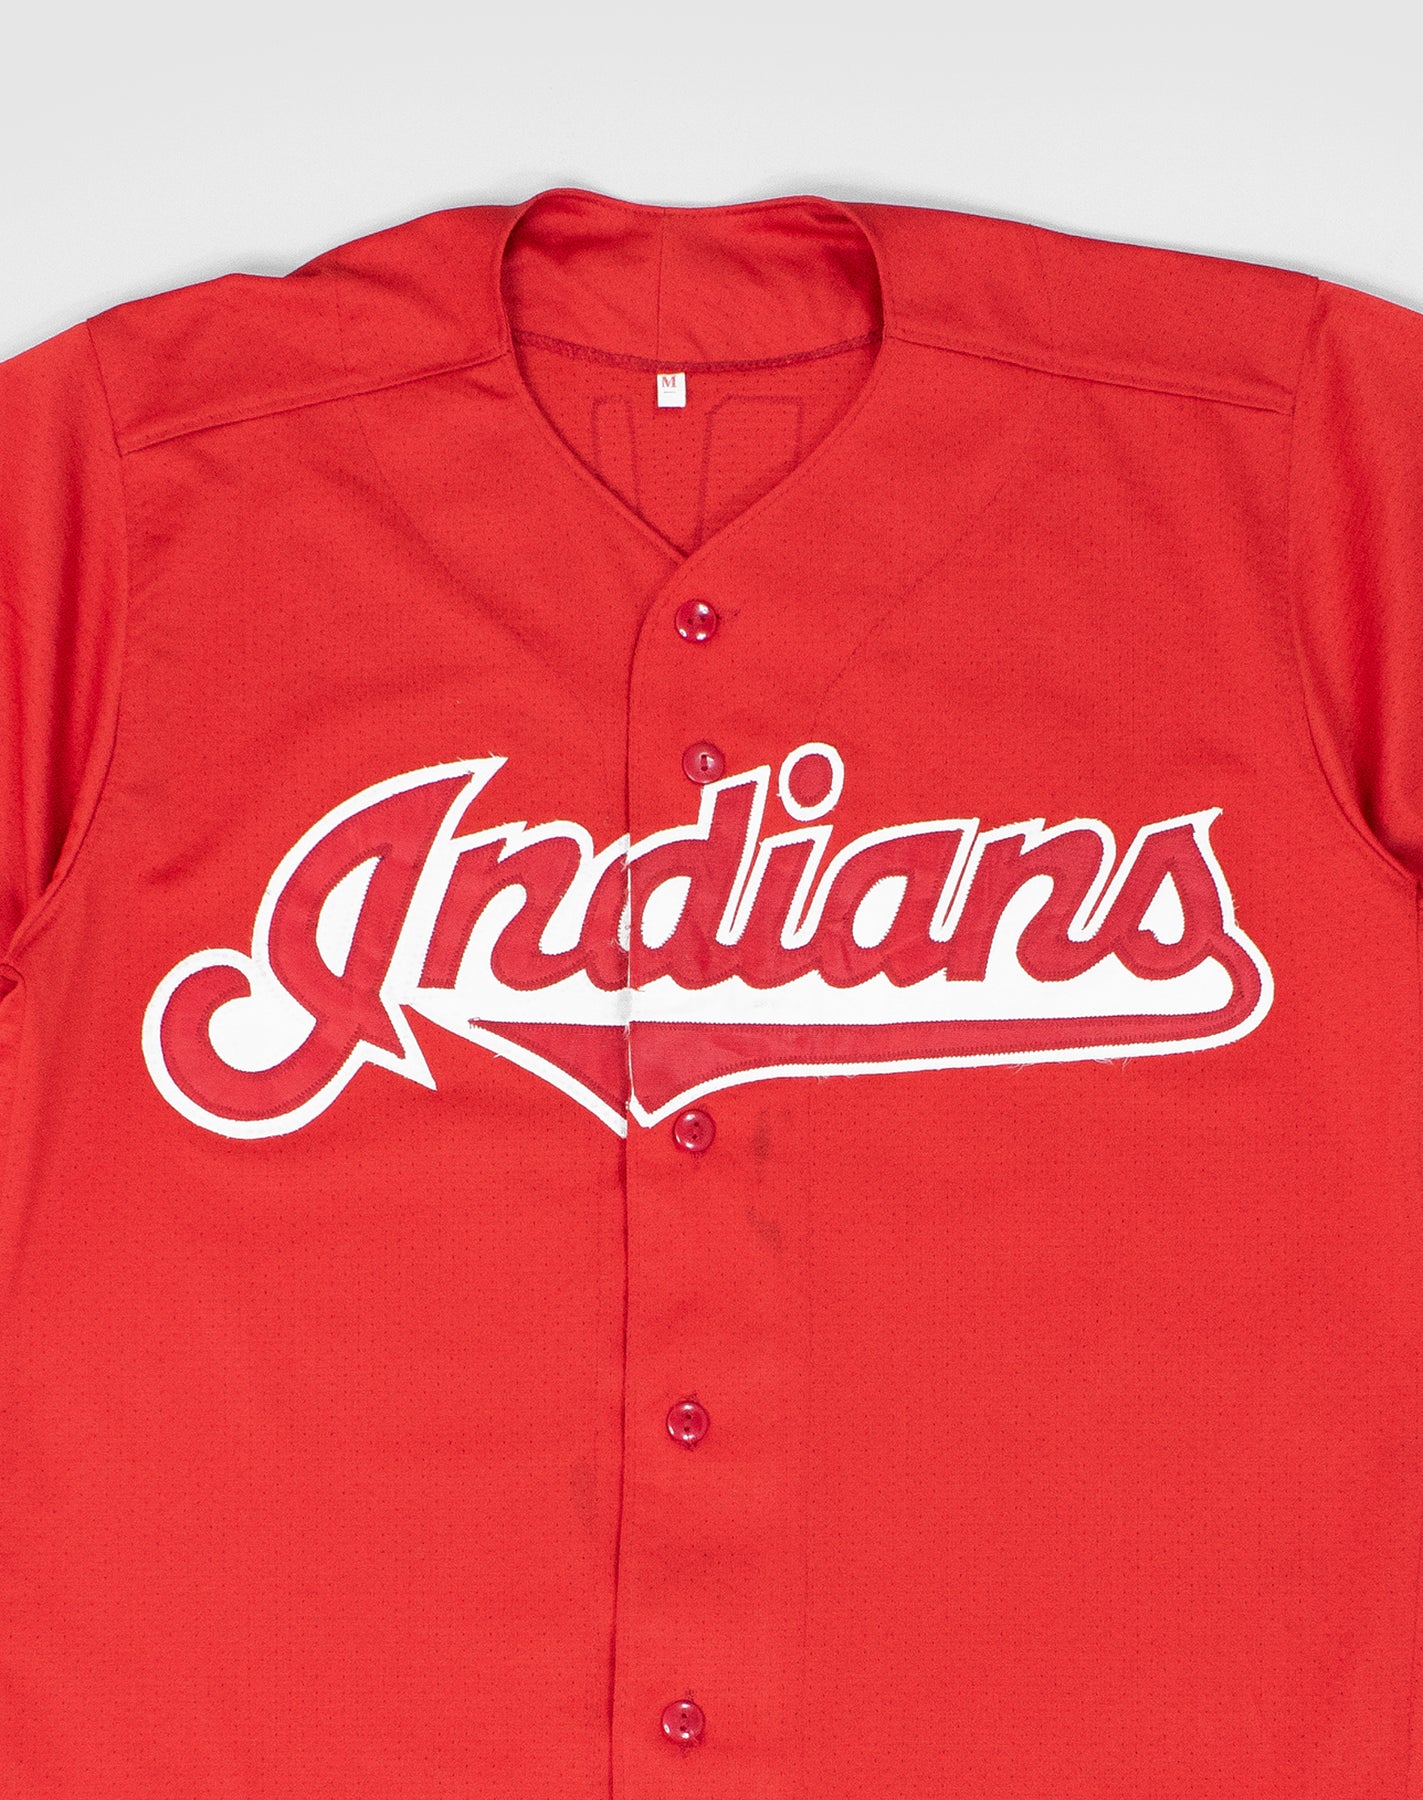 Adidas Cleveland Indians Baseball Jersey Youth Size Medium blue